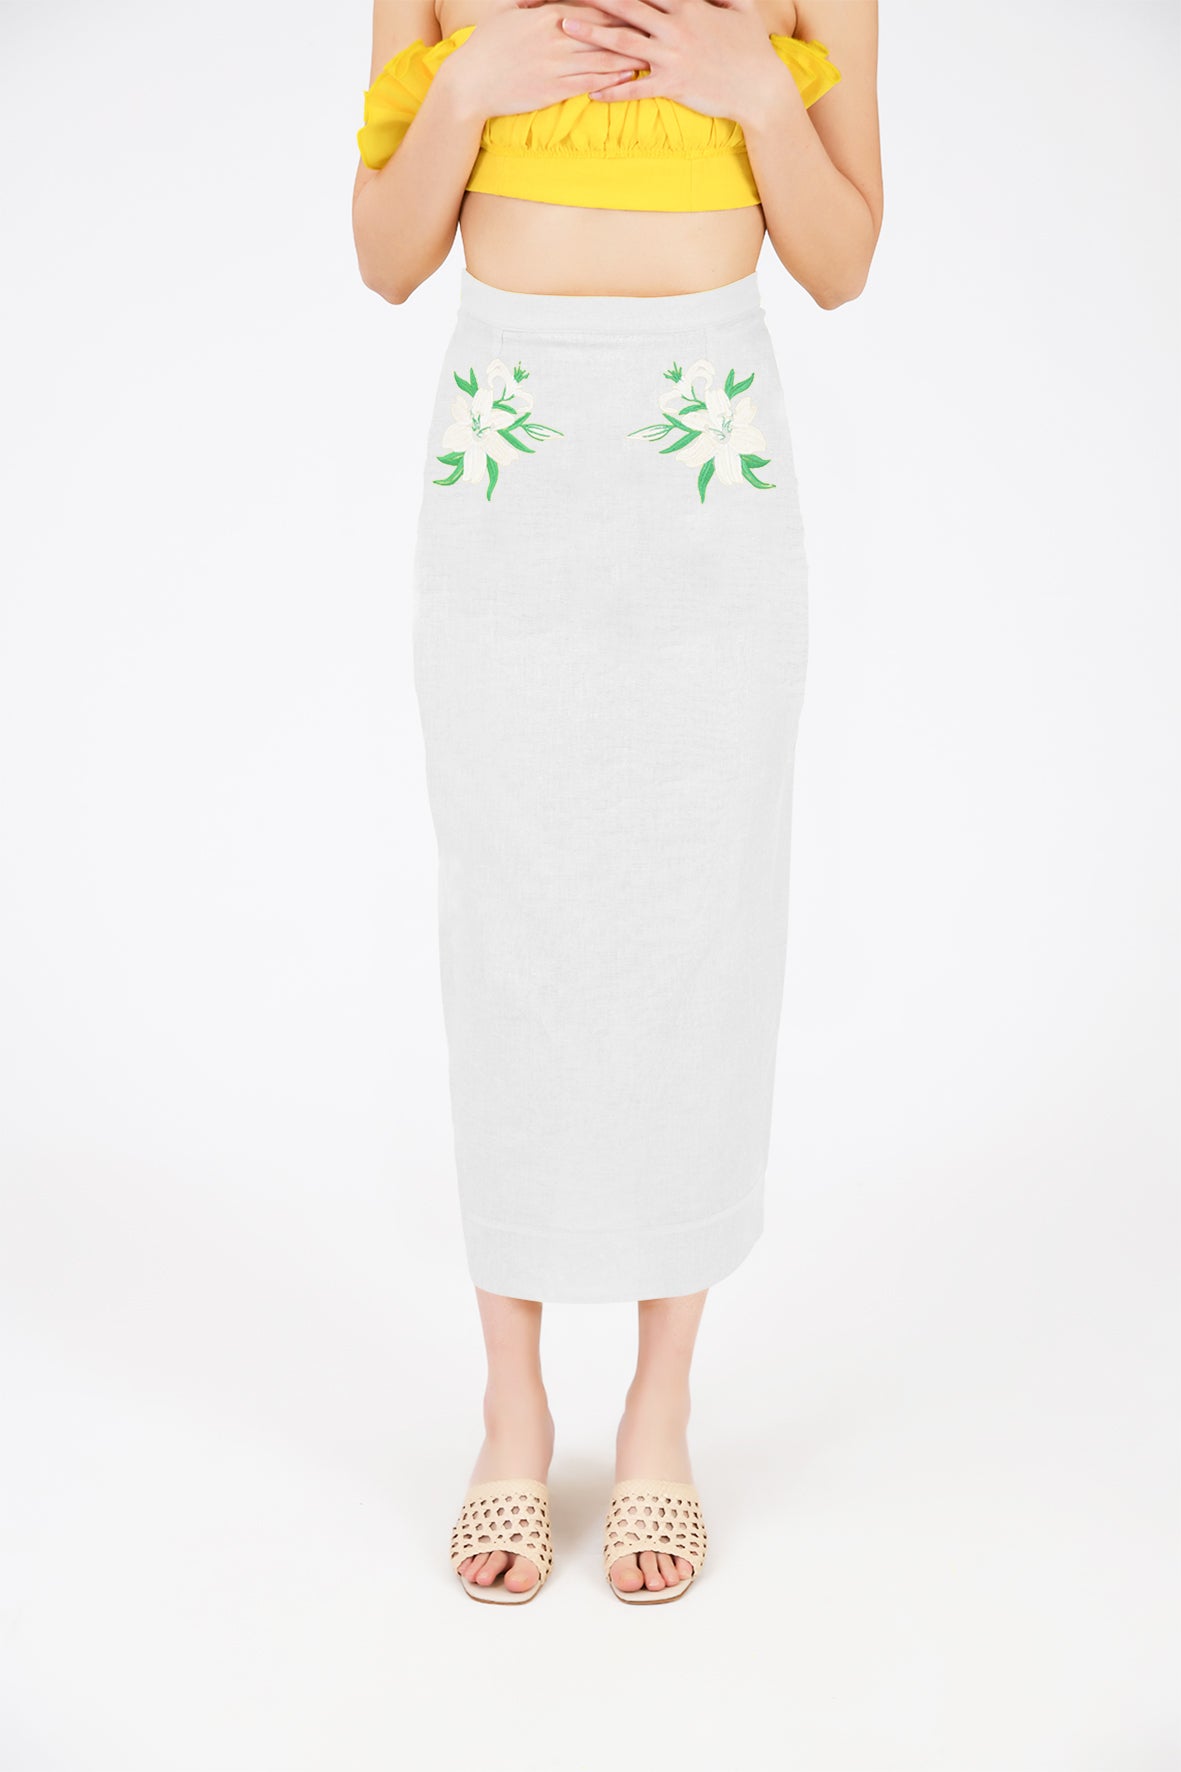 Arina Skirt (Wanga Collection) in White